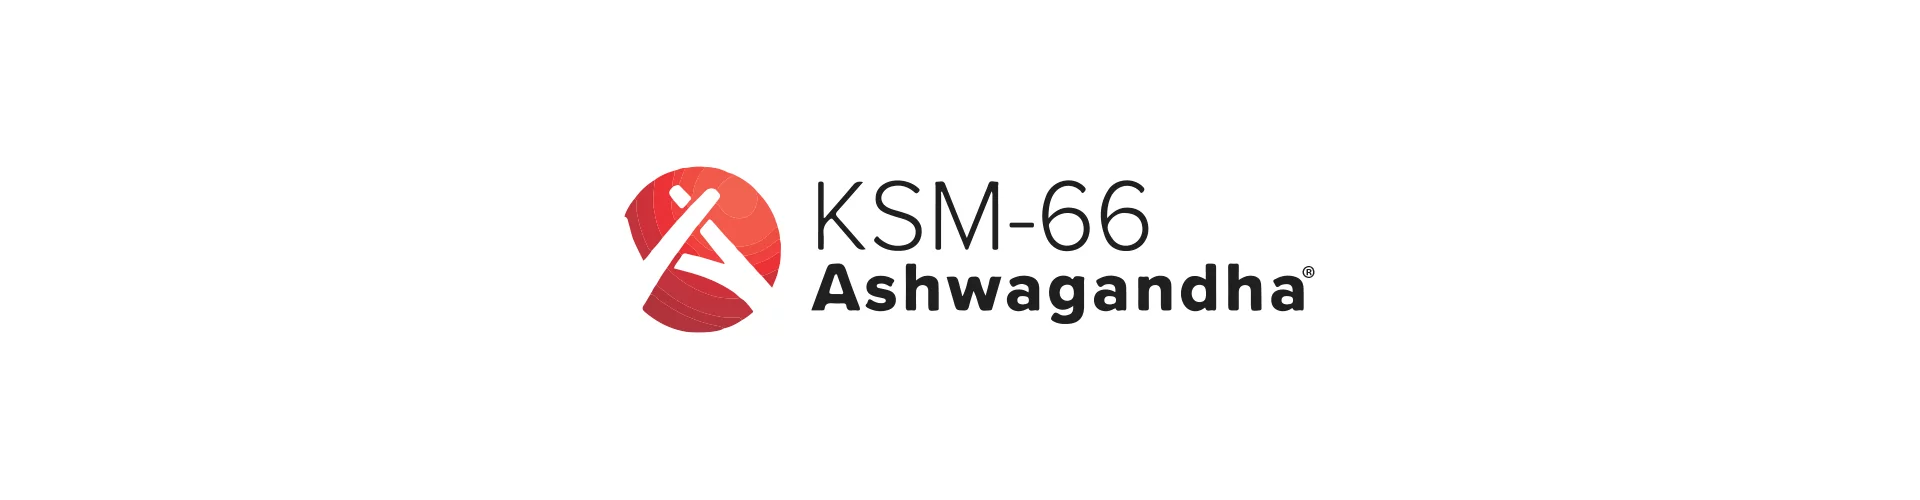 ksm66-la-fonte-migliore-di-ashwaganda-studi-clinici-1